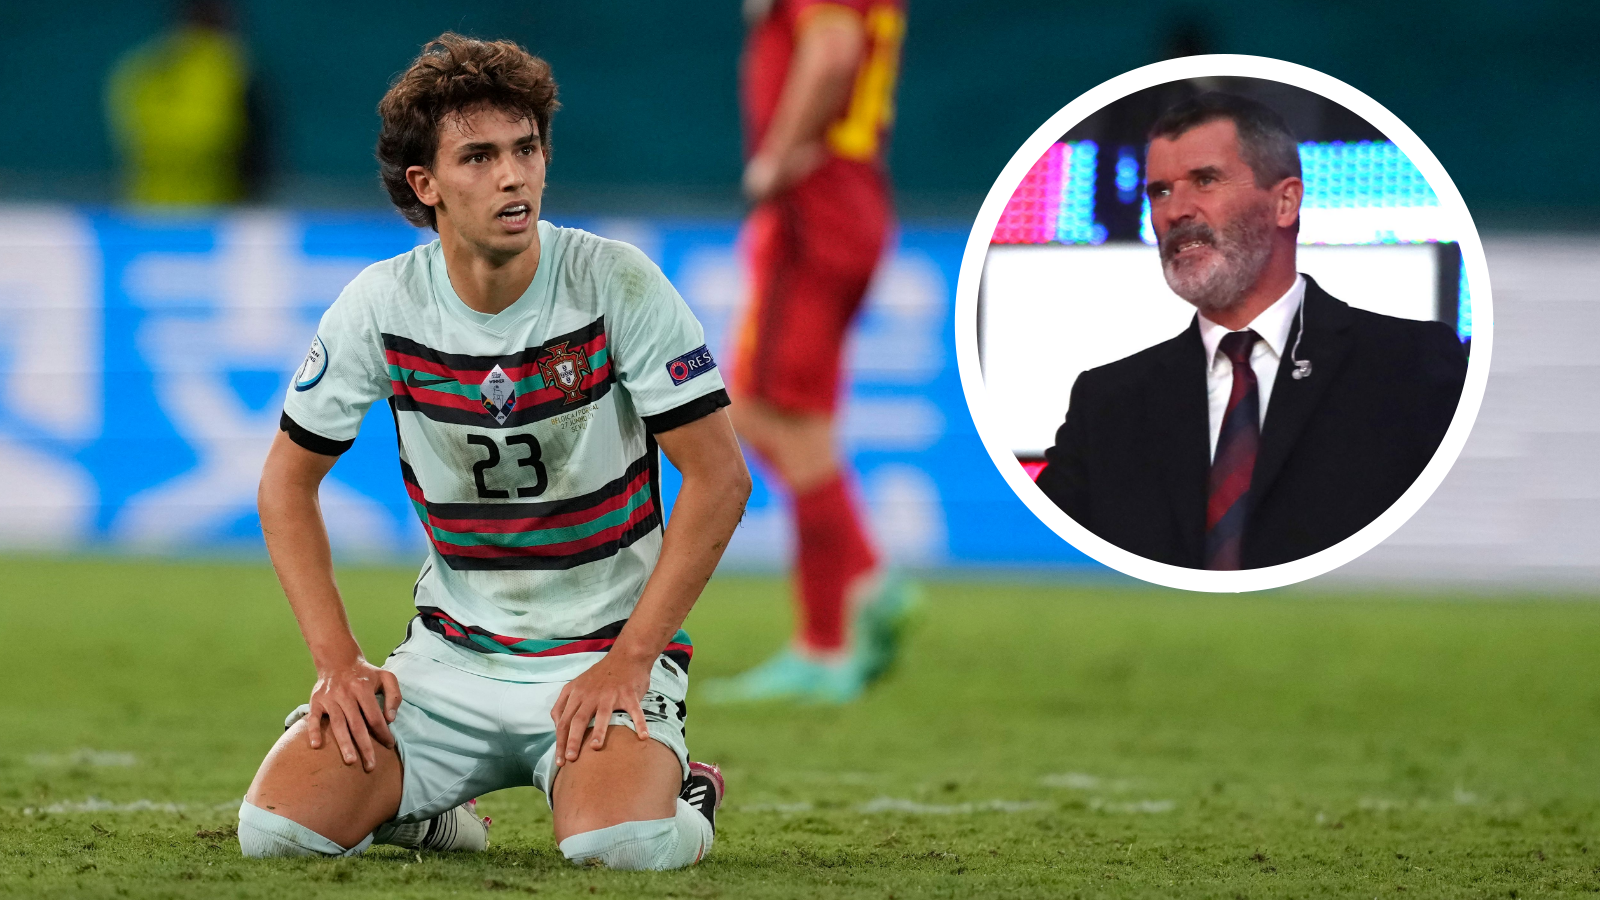 Keane labels Portugal star Felix 'imposter' after Euro 2020 elimination